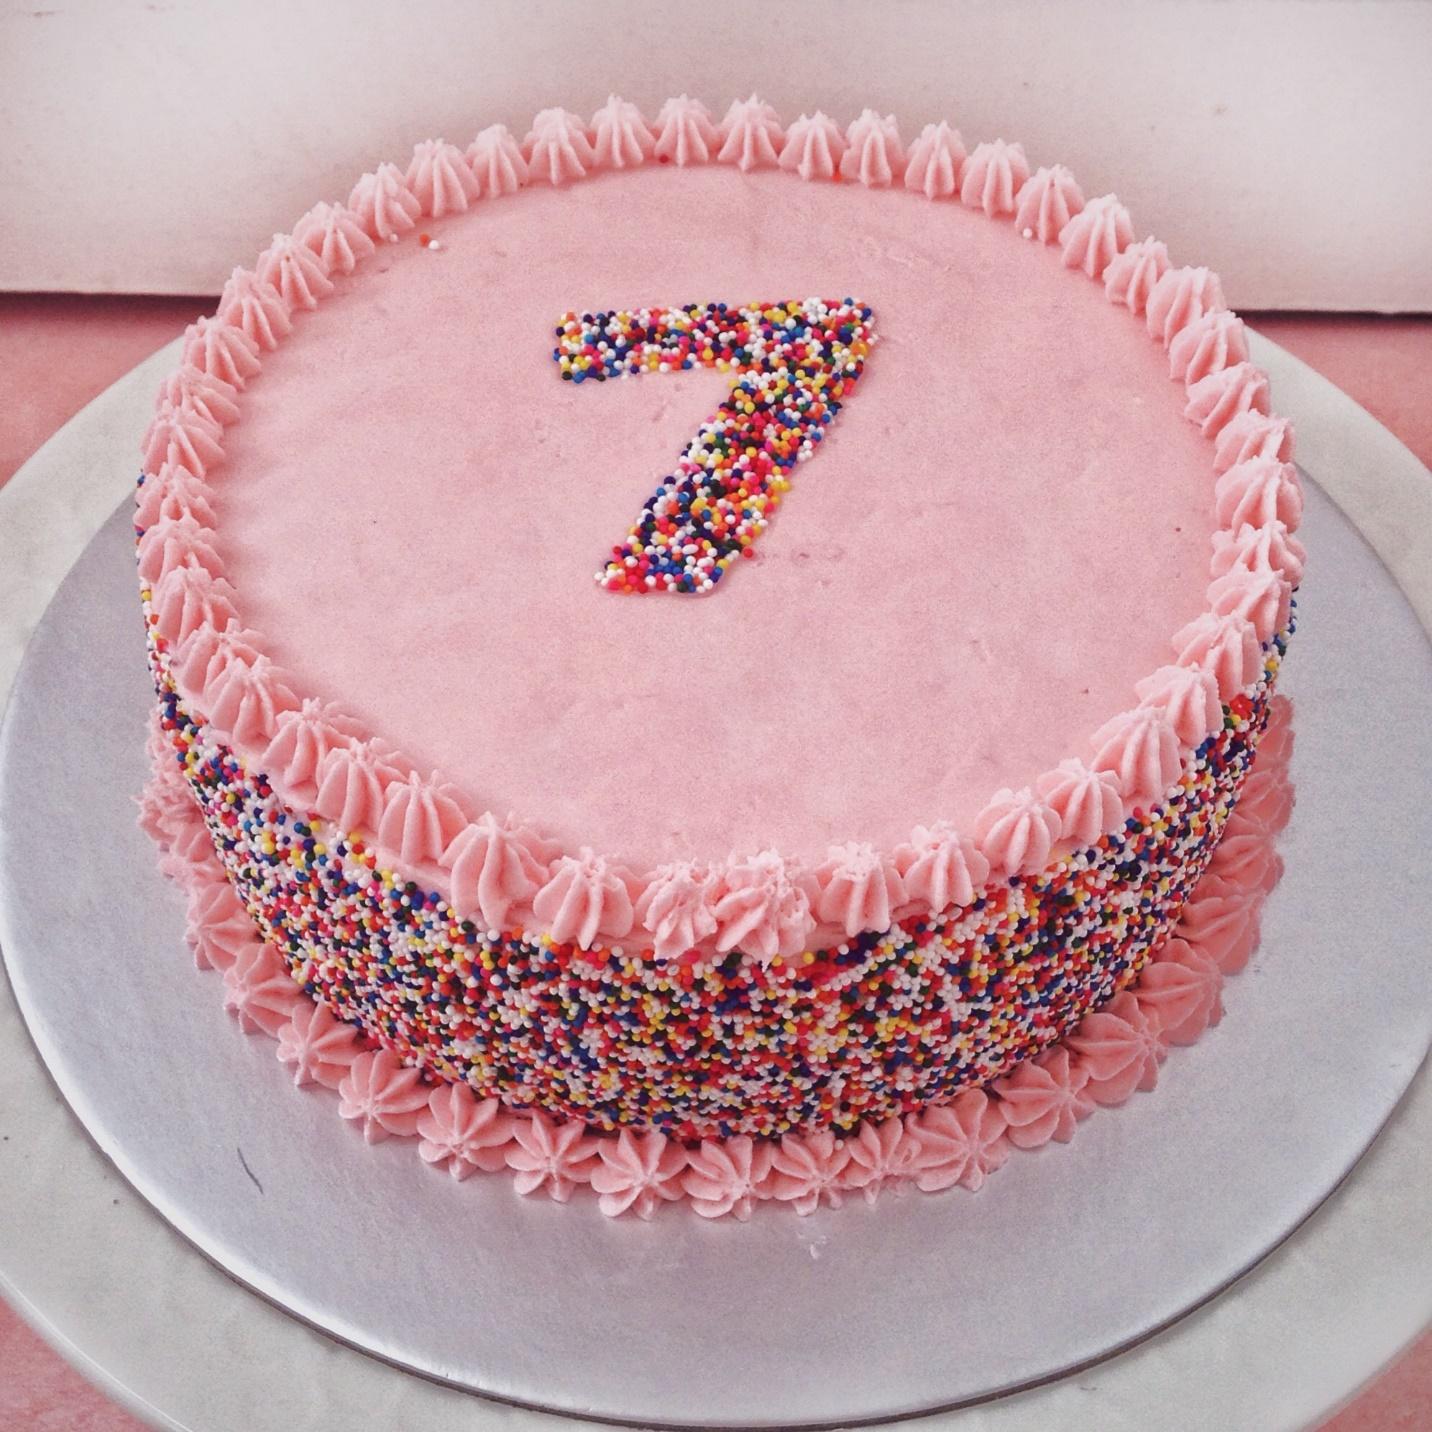 Các bạn đã biết địa chỉ mua bánh sinh nhật quận 9 hay chưa?